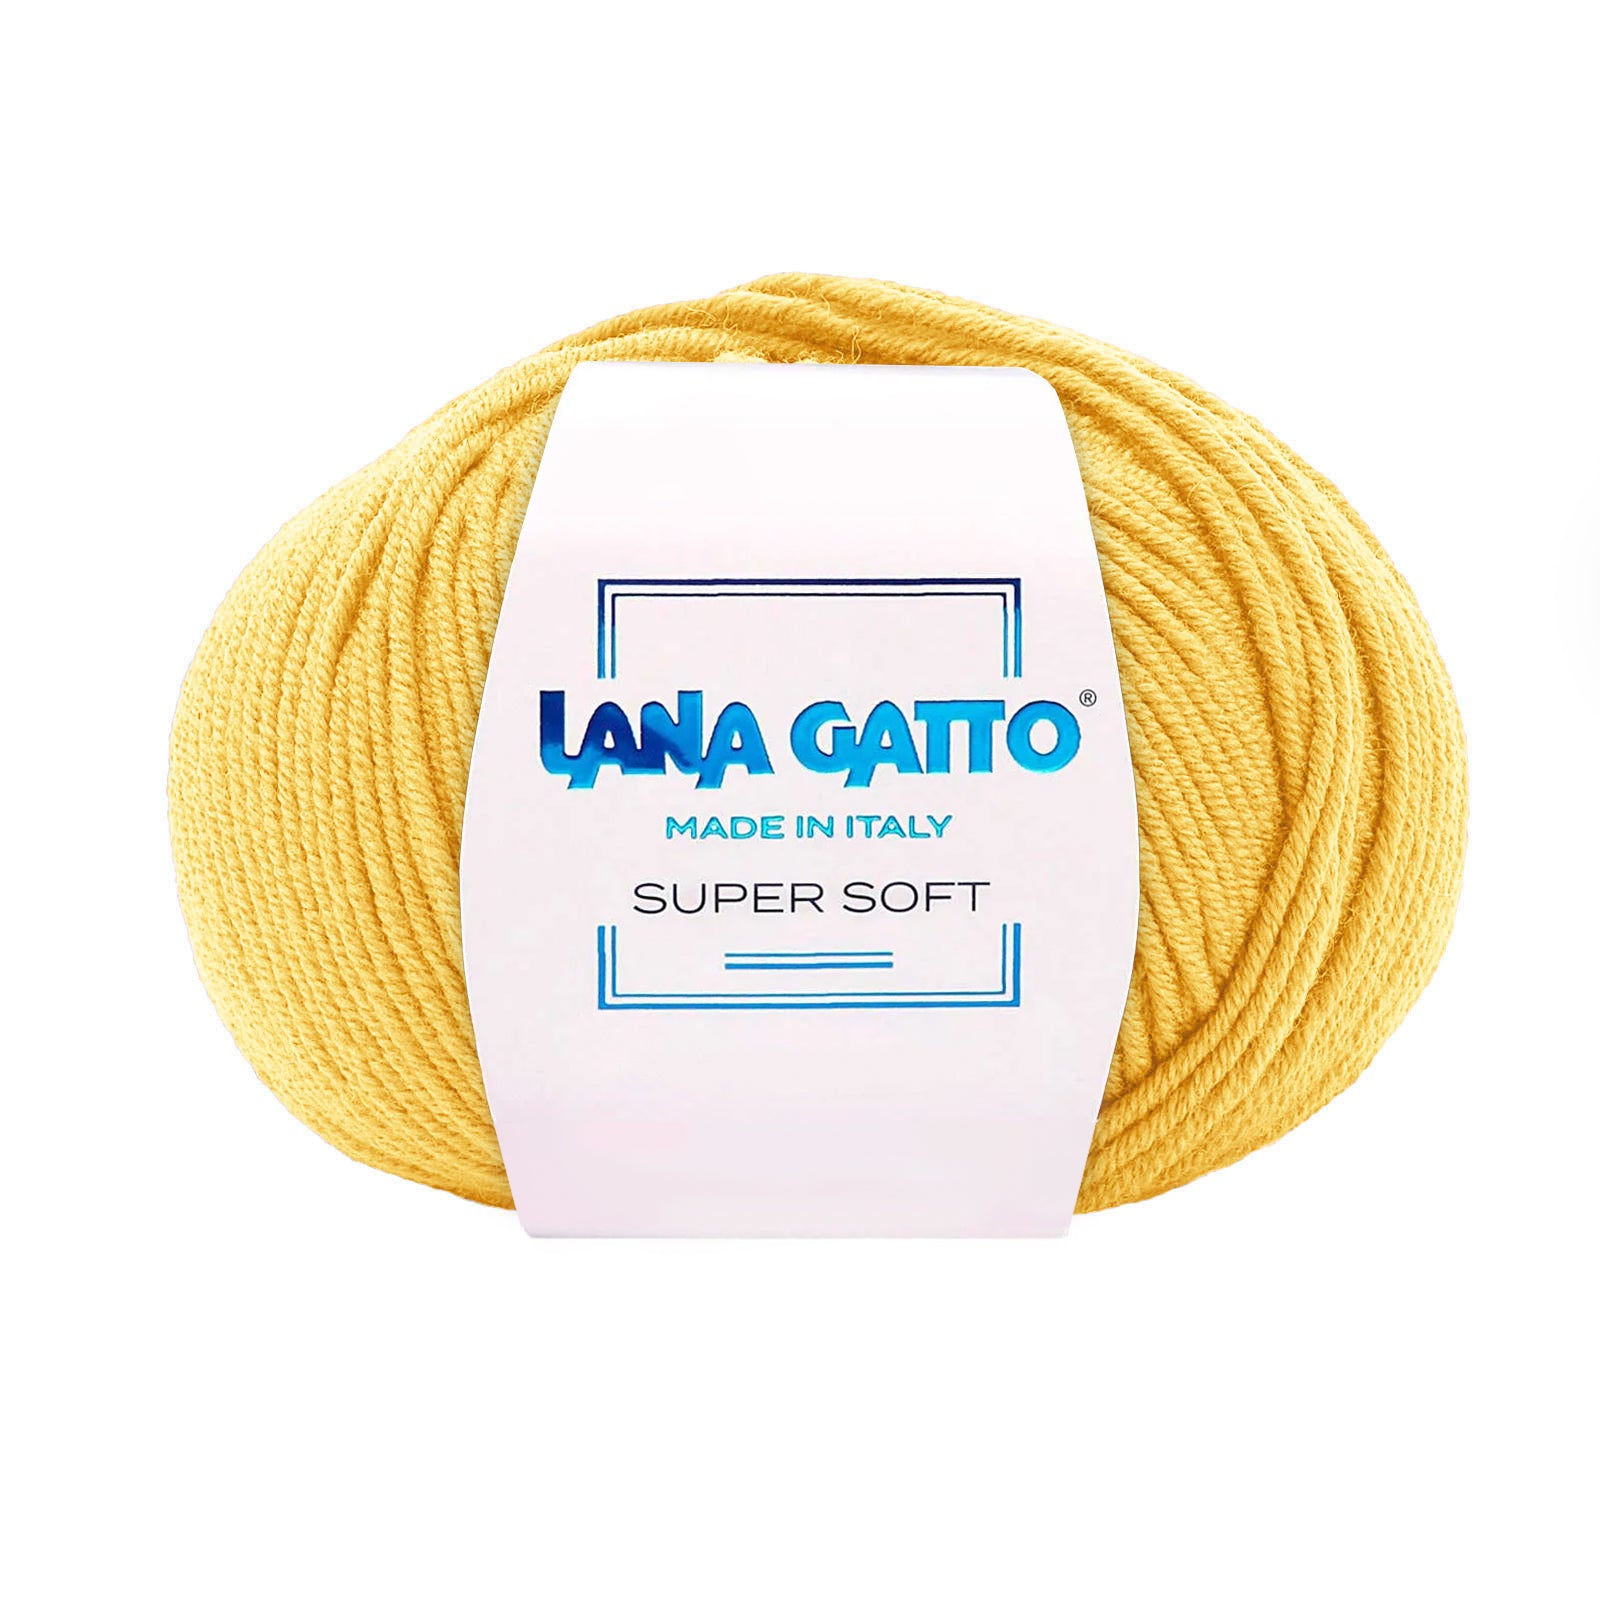 100% Pure Virgin Merino Wool Extrafine, Lana Gatto Super Soft Line - Warm Colors